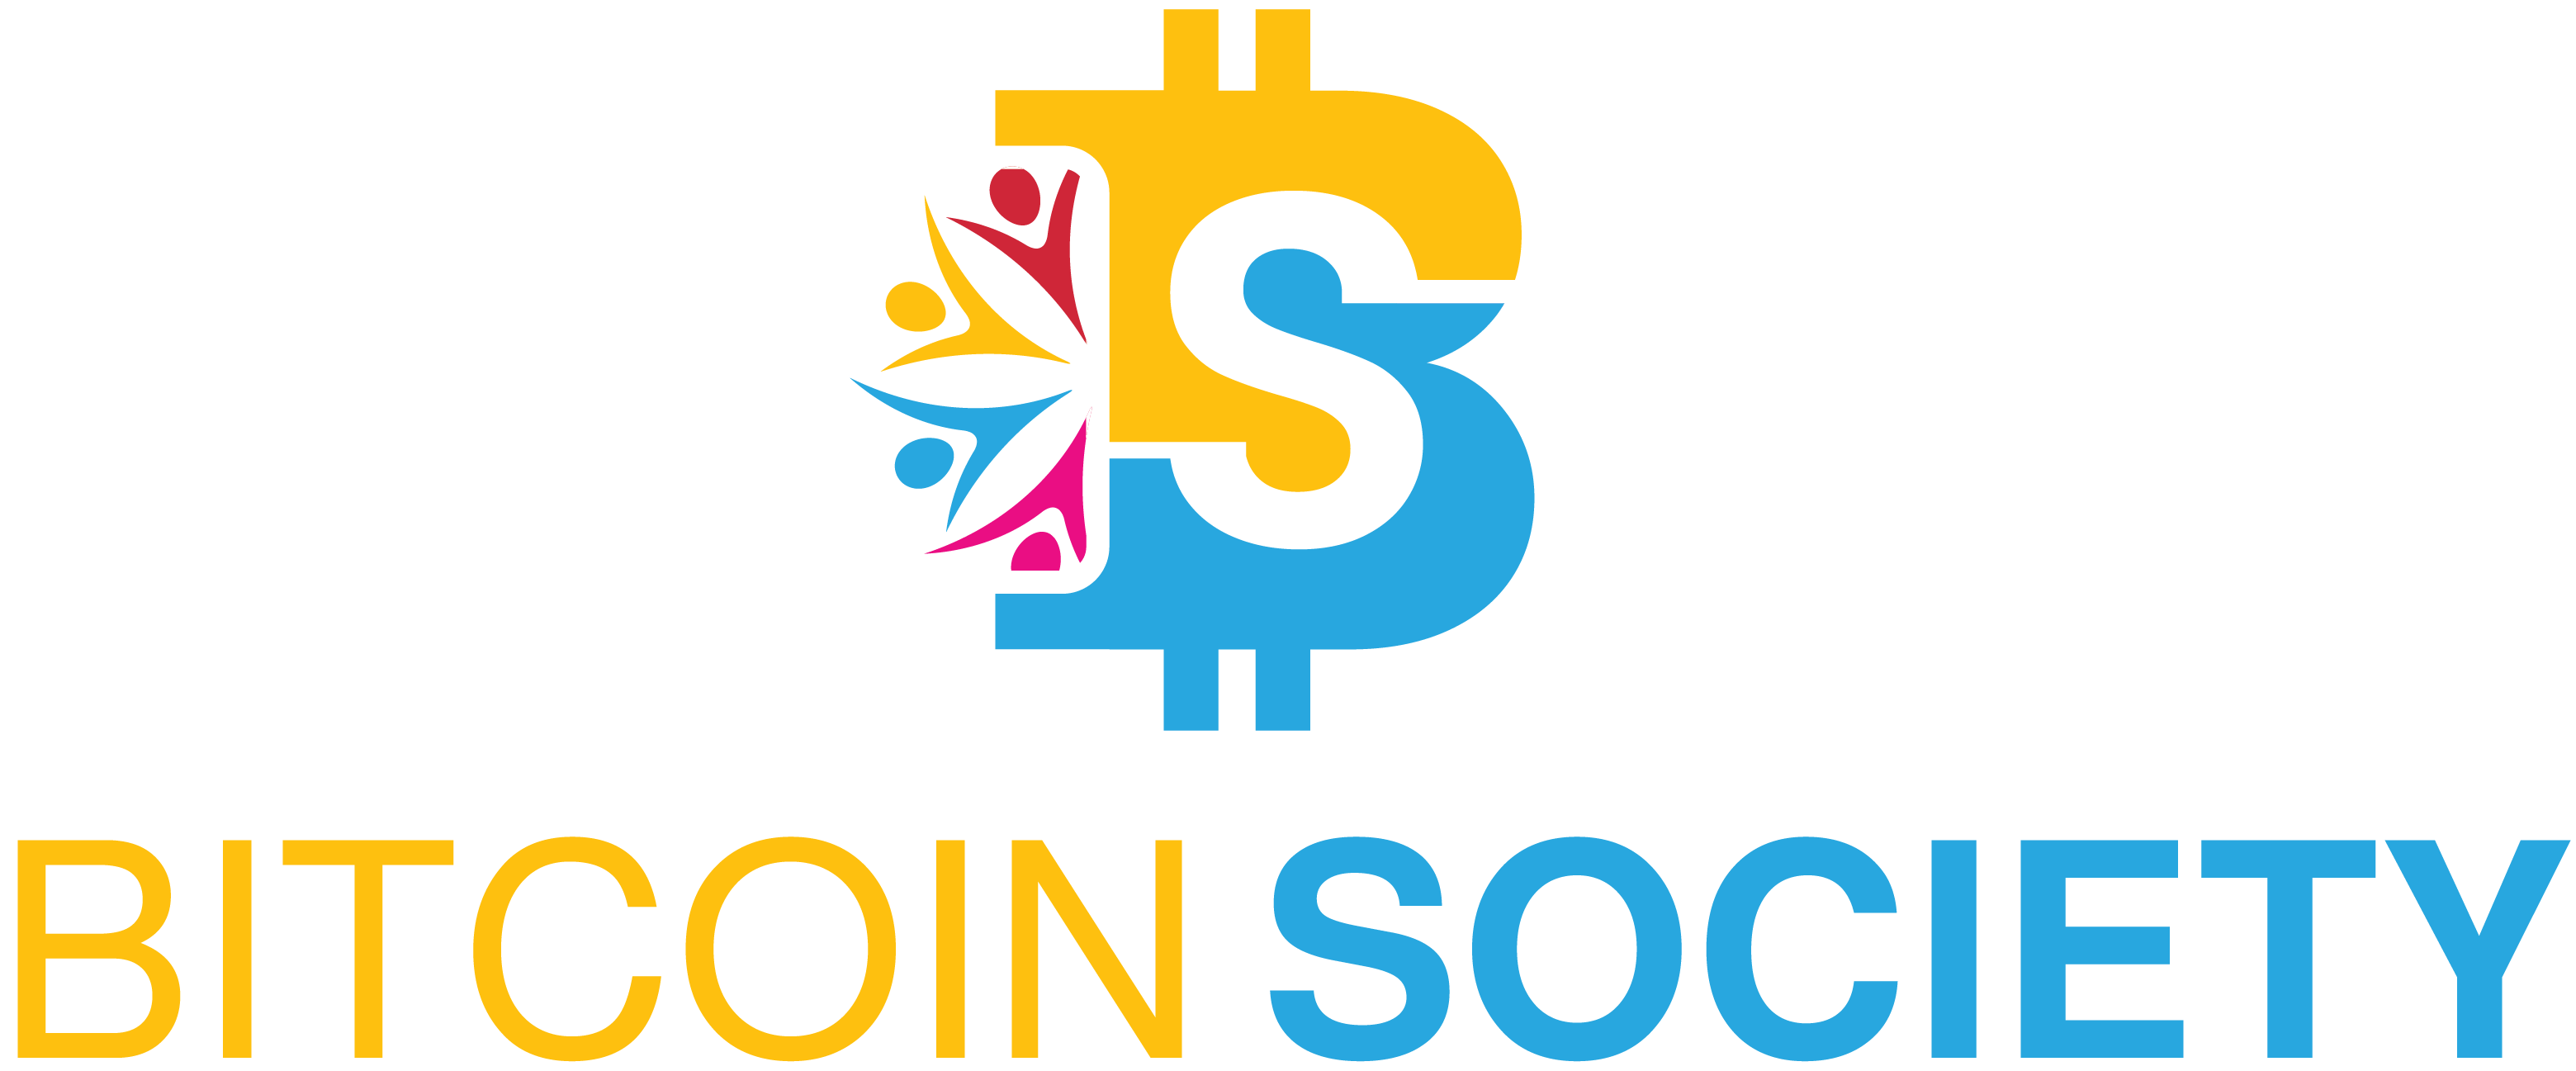 Bitcoin Society - A equipe Bitcoin Society